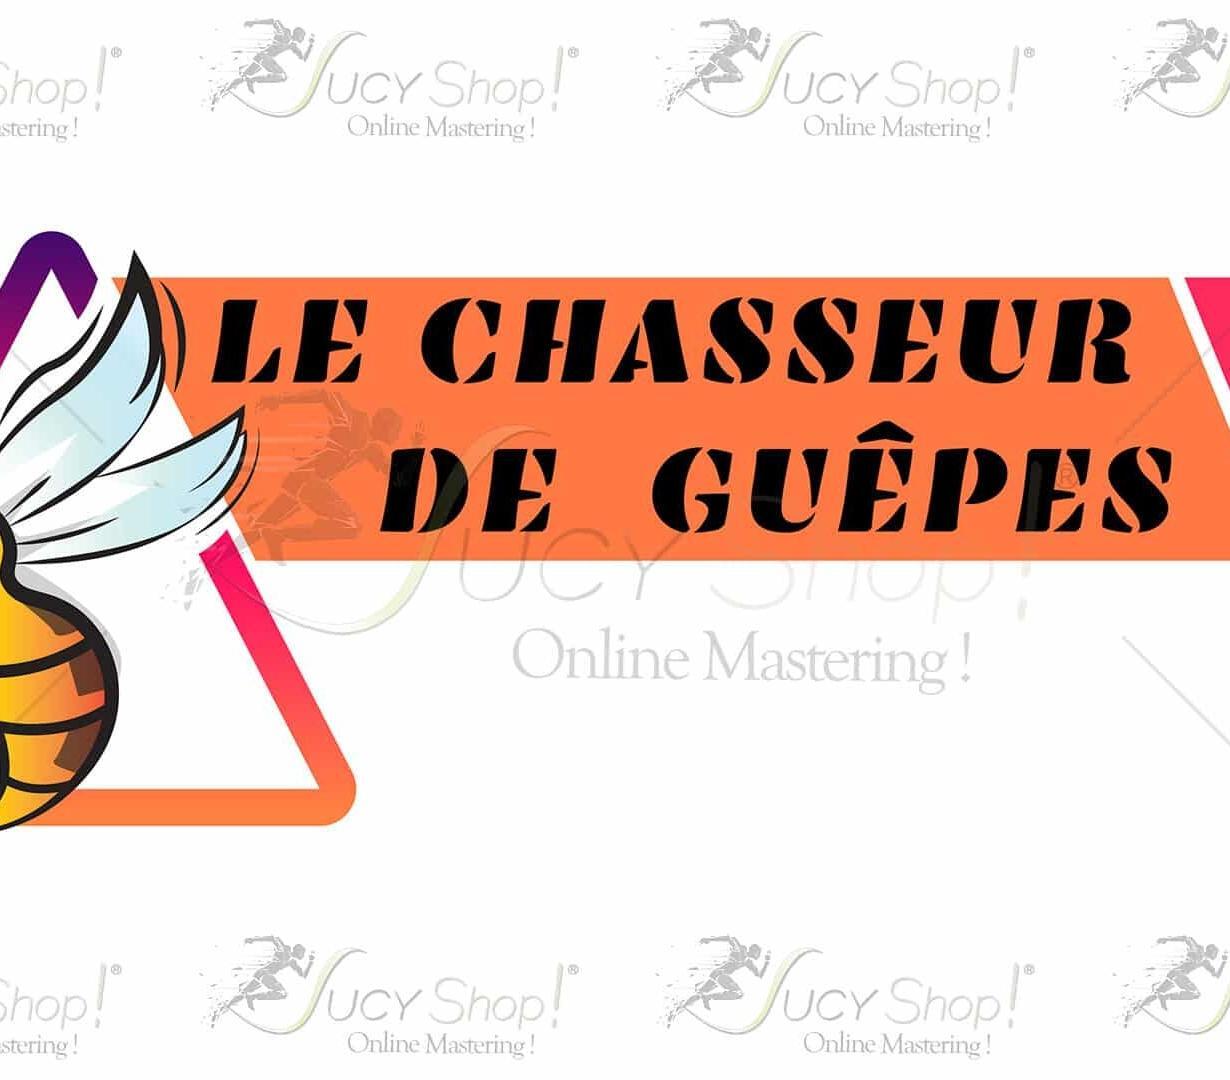 Sucyshop_logo_chasseur_de_guepes